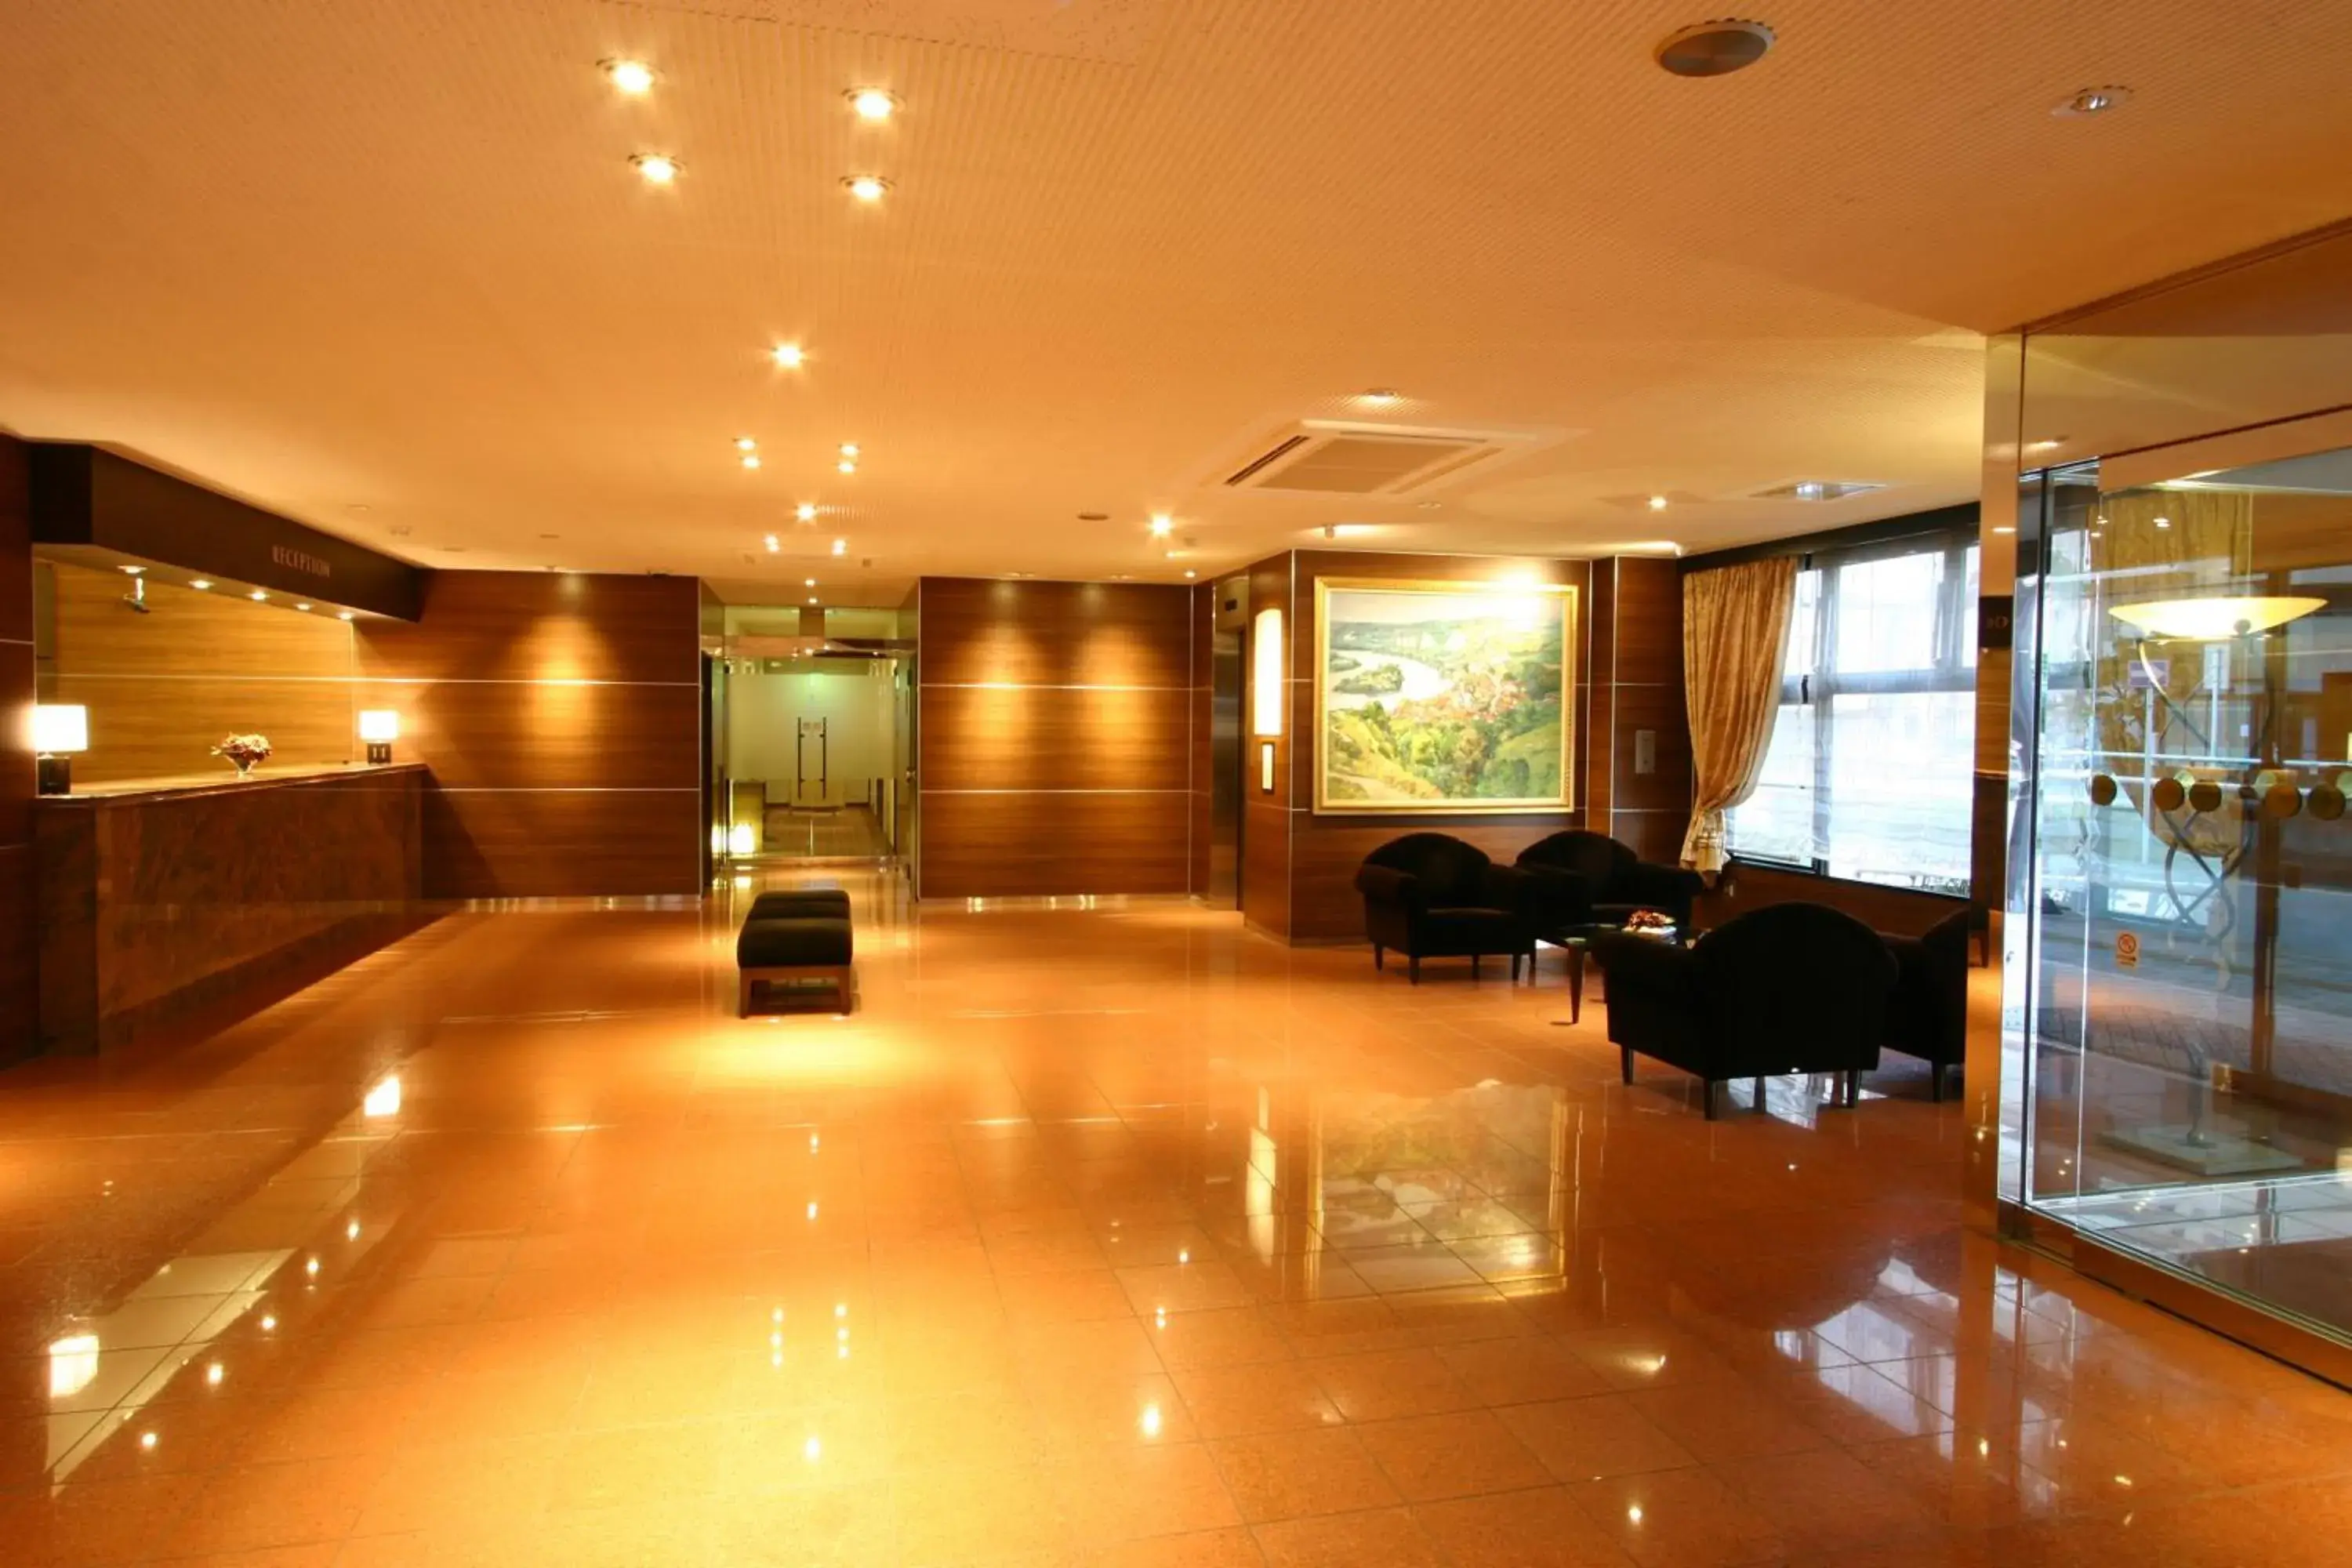 Lobby or reception, Lobby/Reception in Smile Hotel Kawaguchi